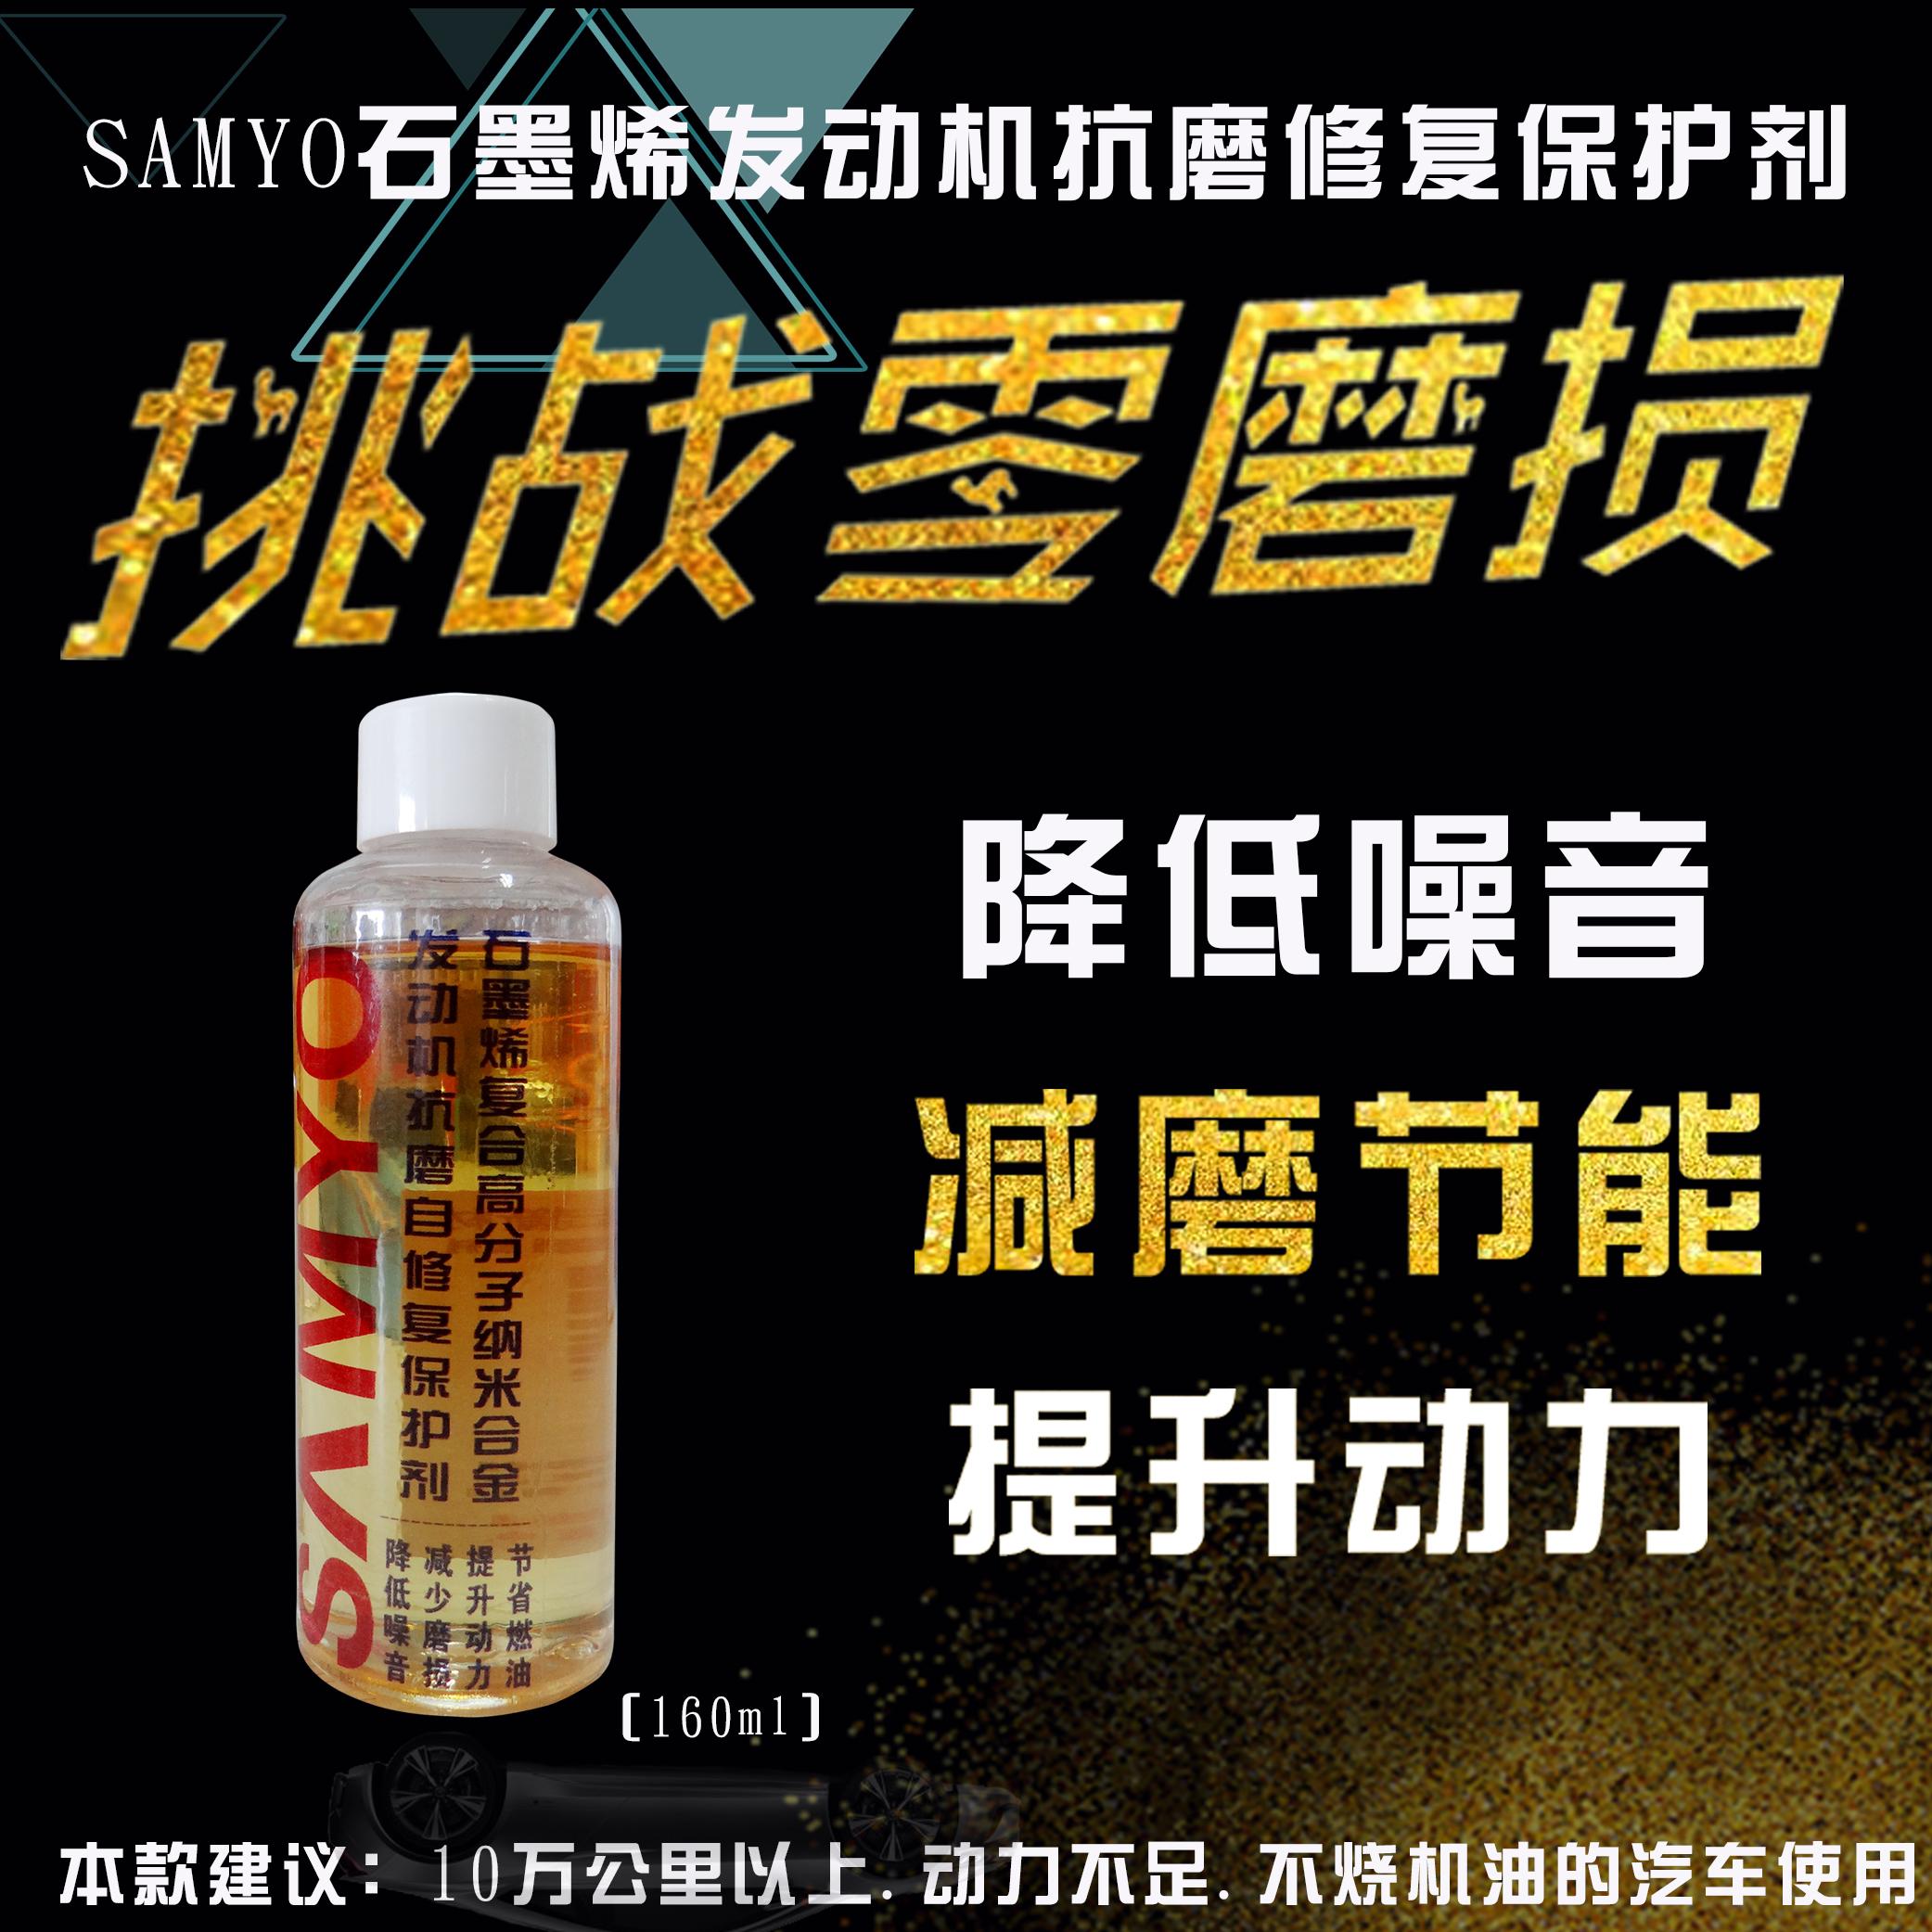 SAMYO发动机抗磨修复保护剂 石墨烯抗磨剂 烯碳纳米合金添加剂